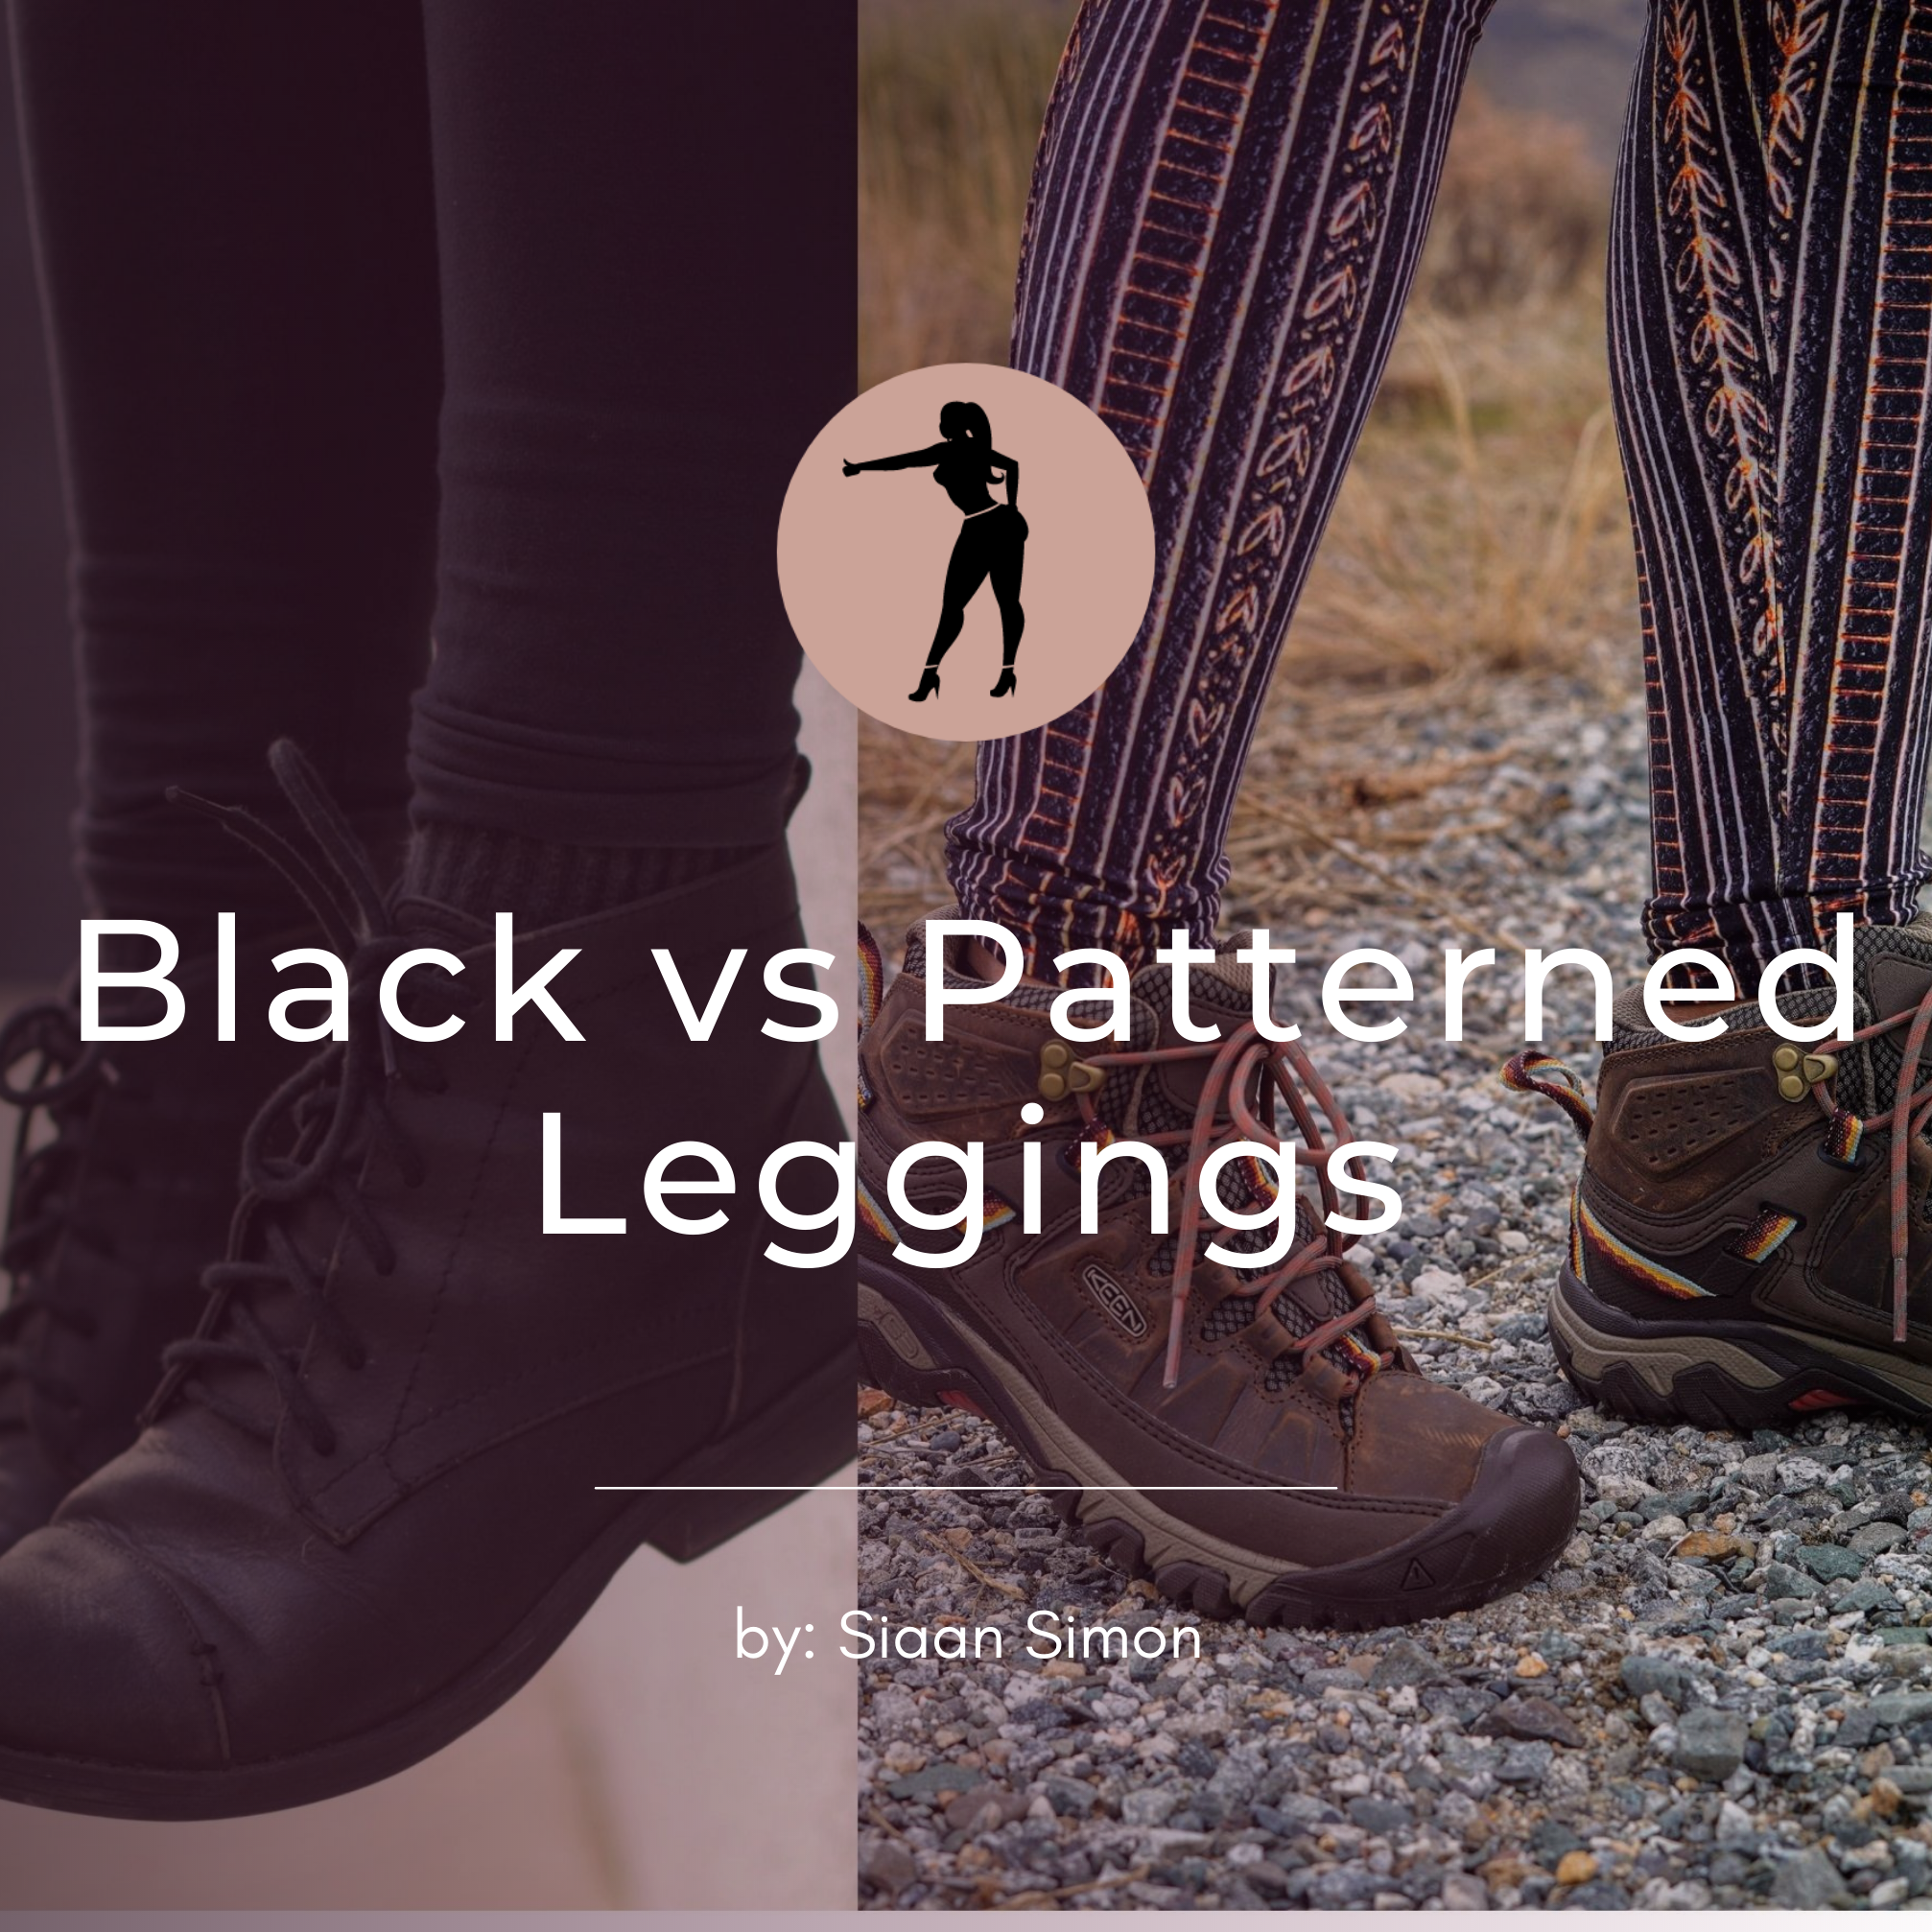 Black vs Patterned Leggings